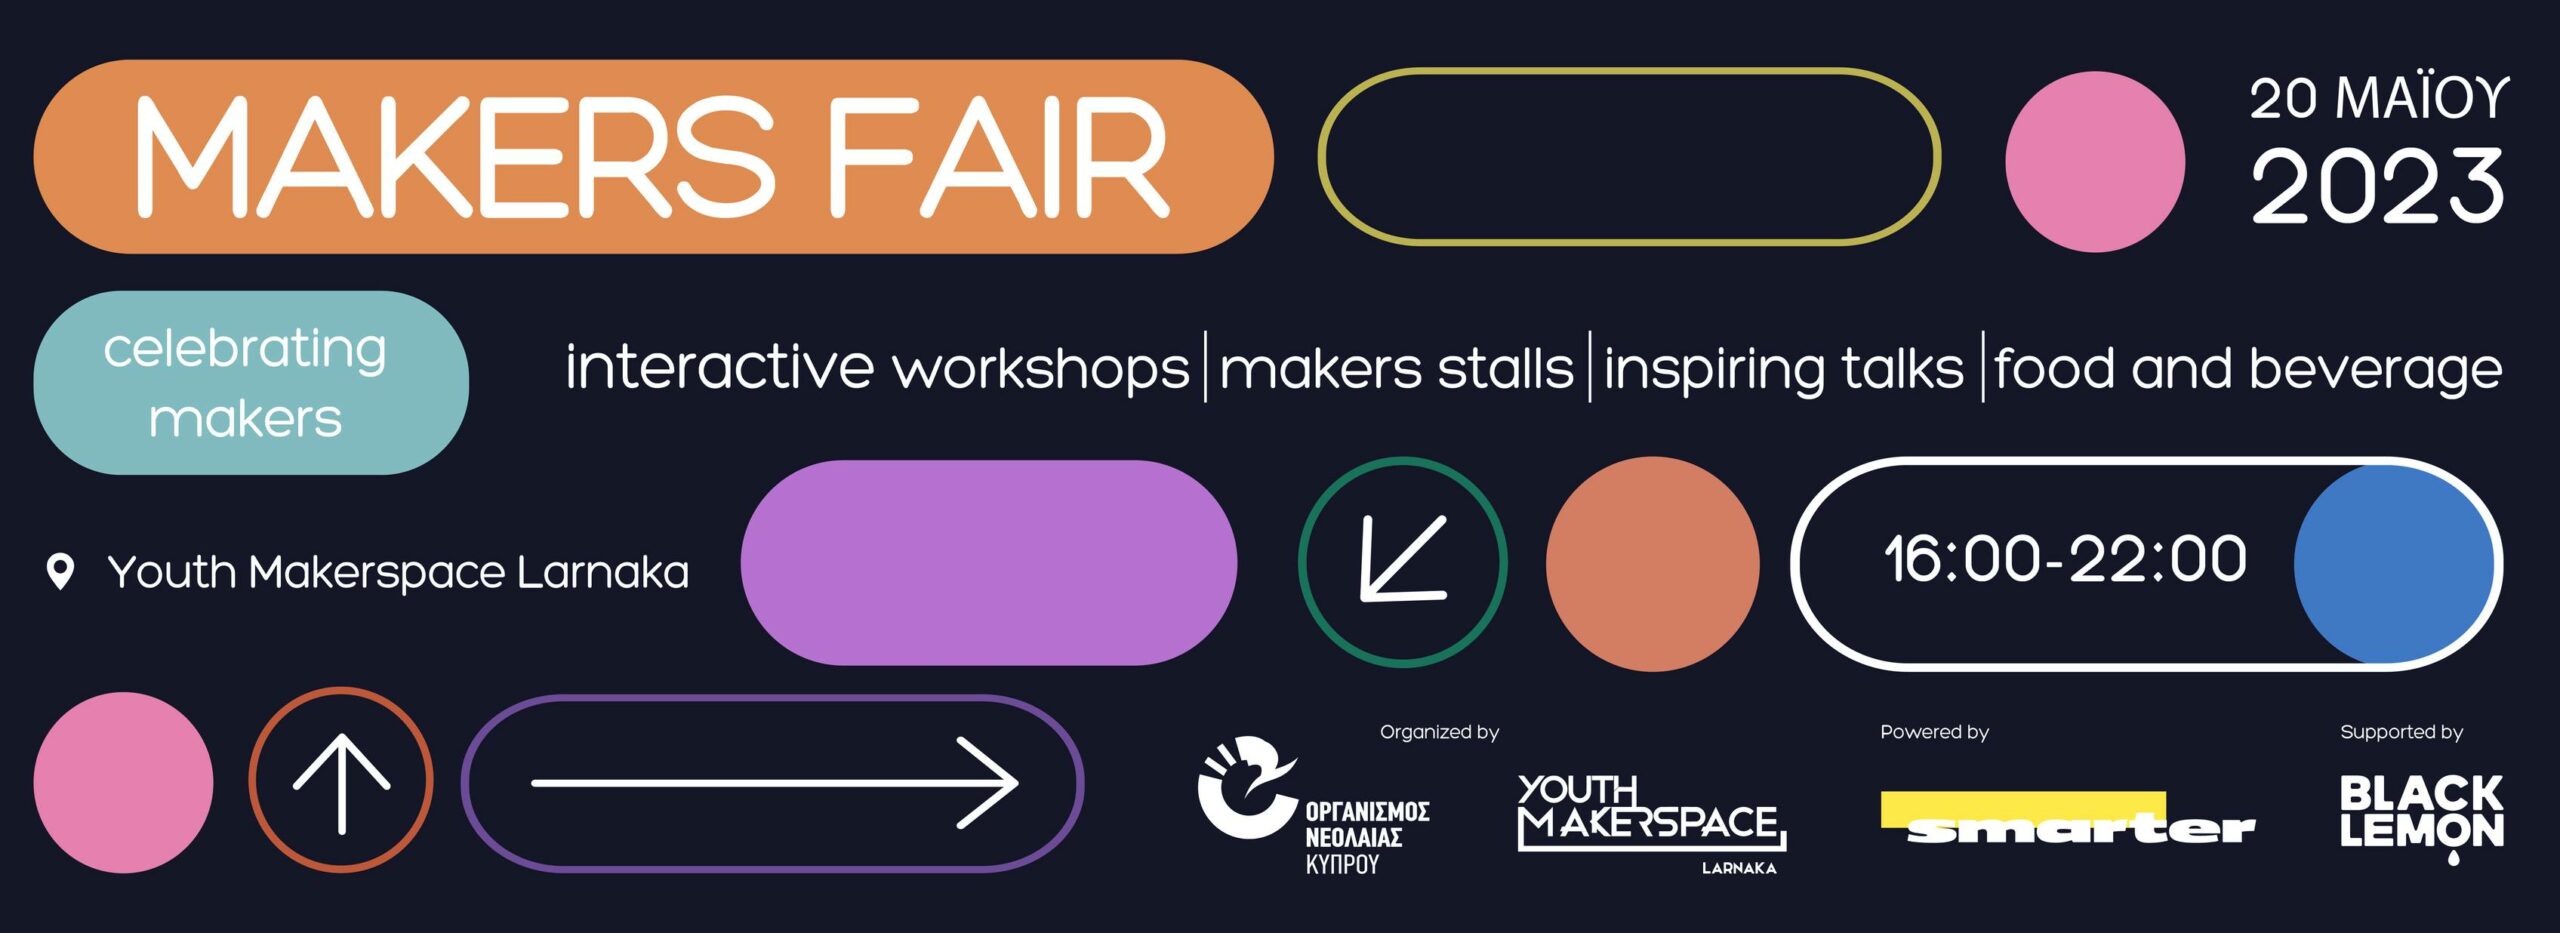 Το πρώτο «Makers Fair», διοργανώνεται στην Λάρνακα